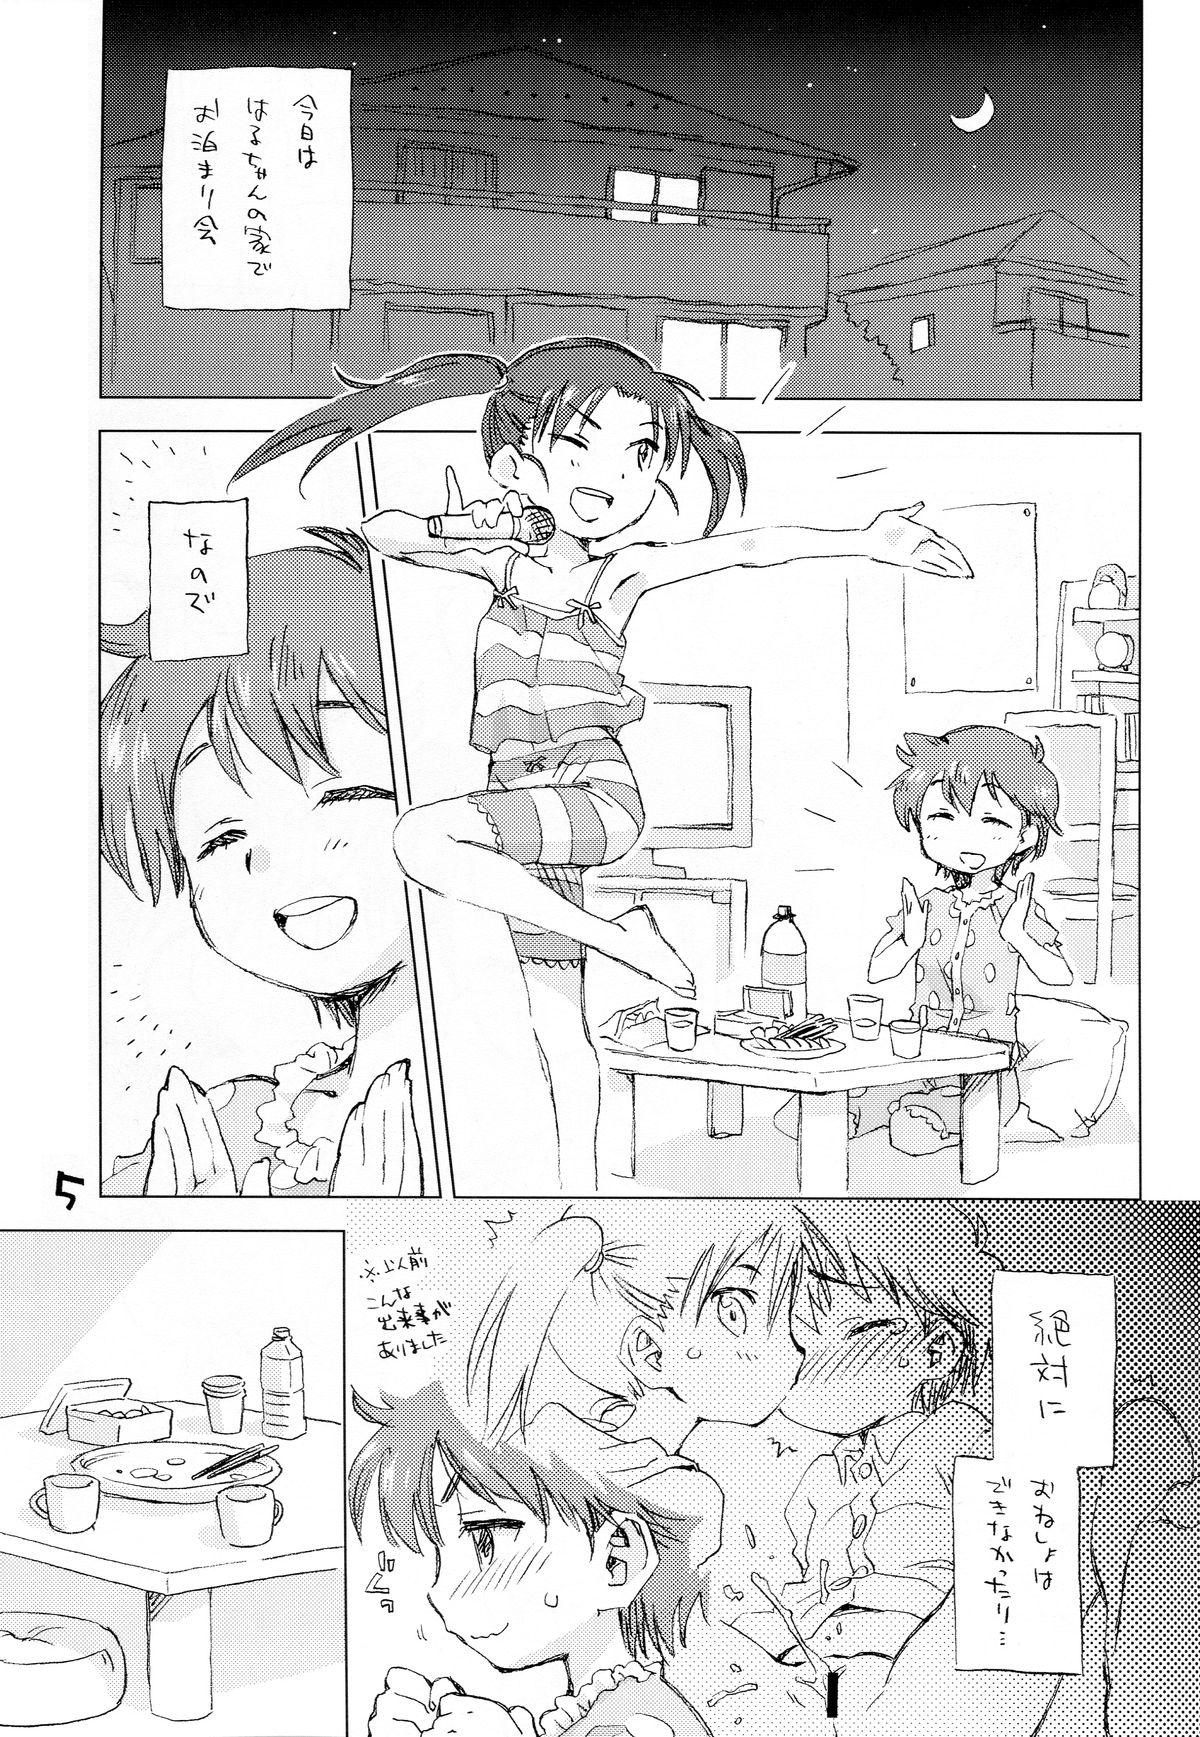 Edging Okosama Lunch Kagaijugyou 3 Ninfeta - Page 2